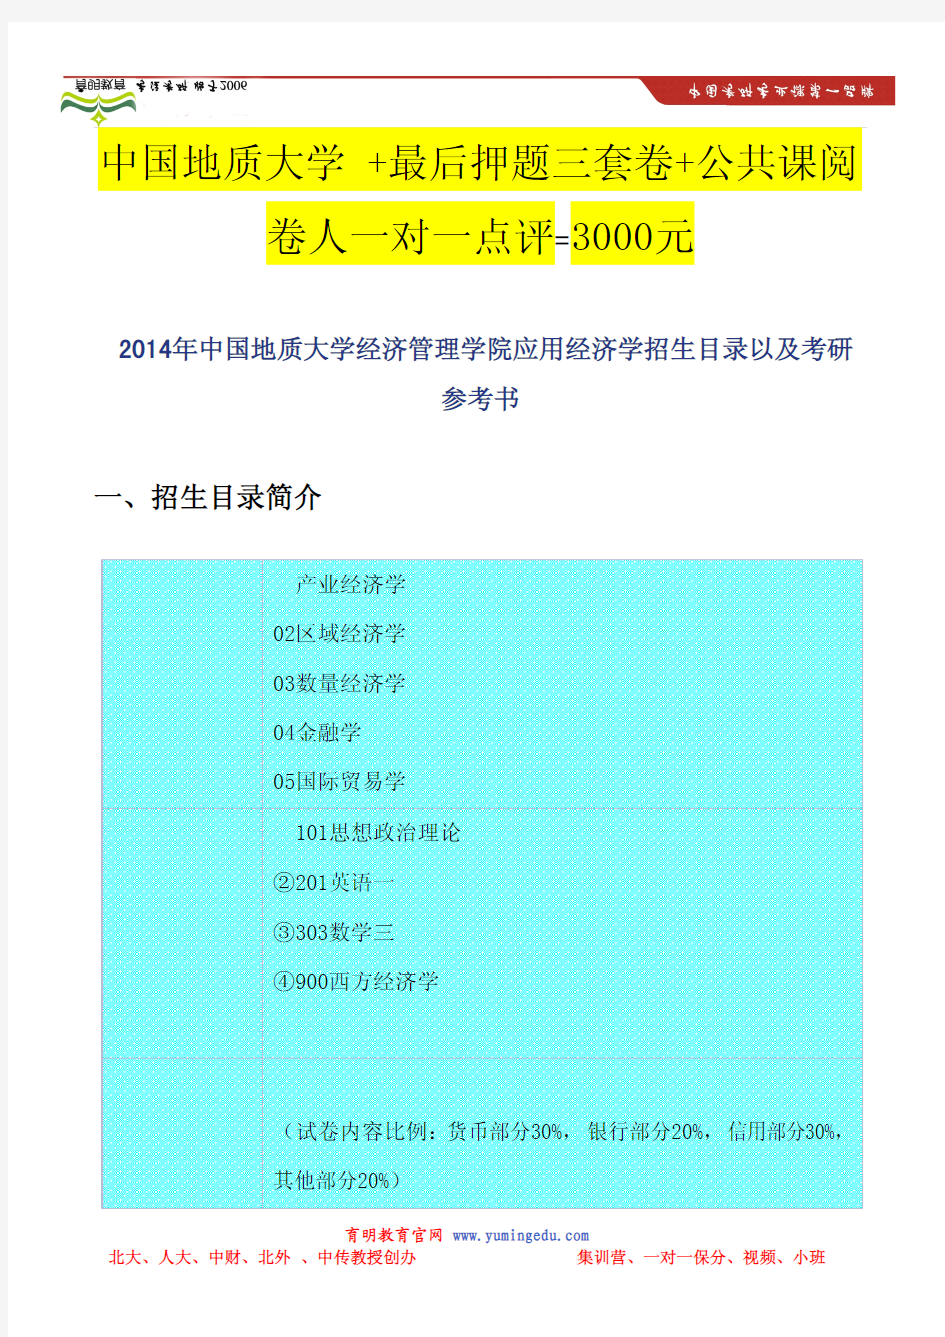 2014年中国地质大学经济管理学院应用经济学招生目录以及考研参考书